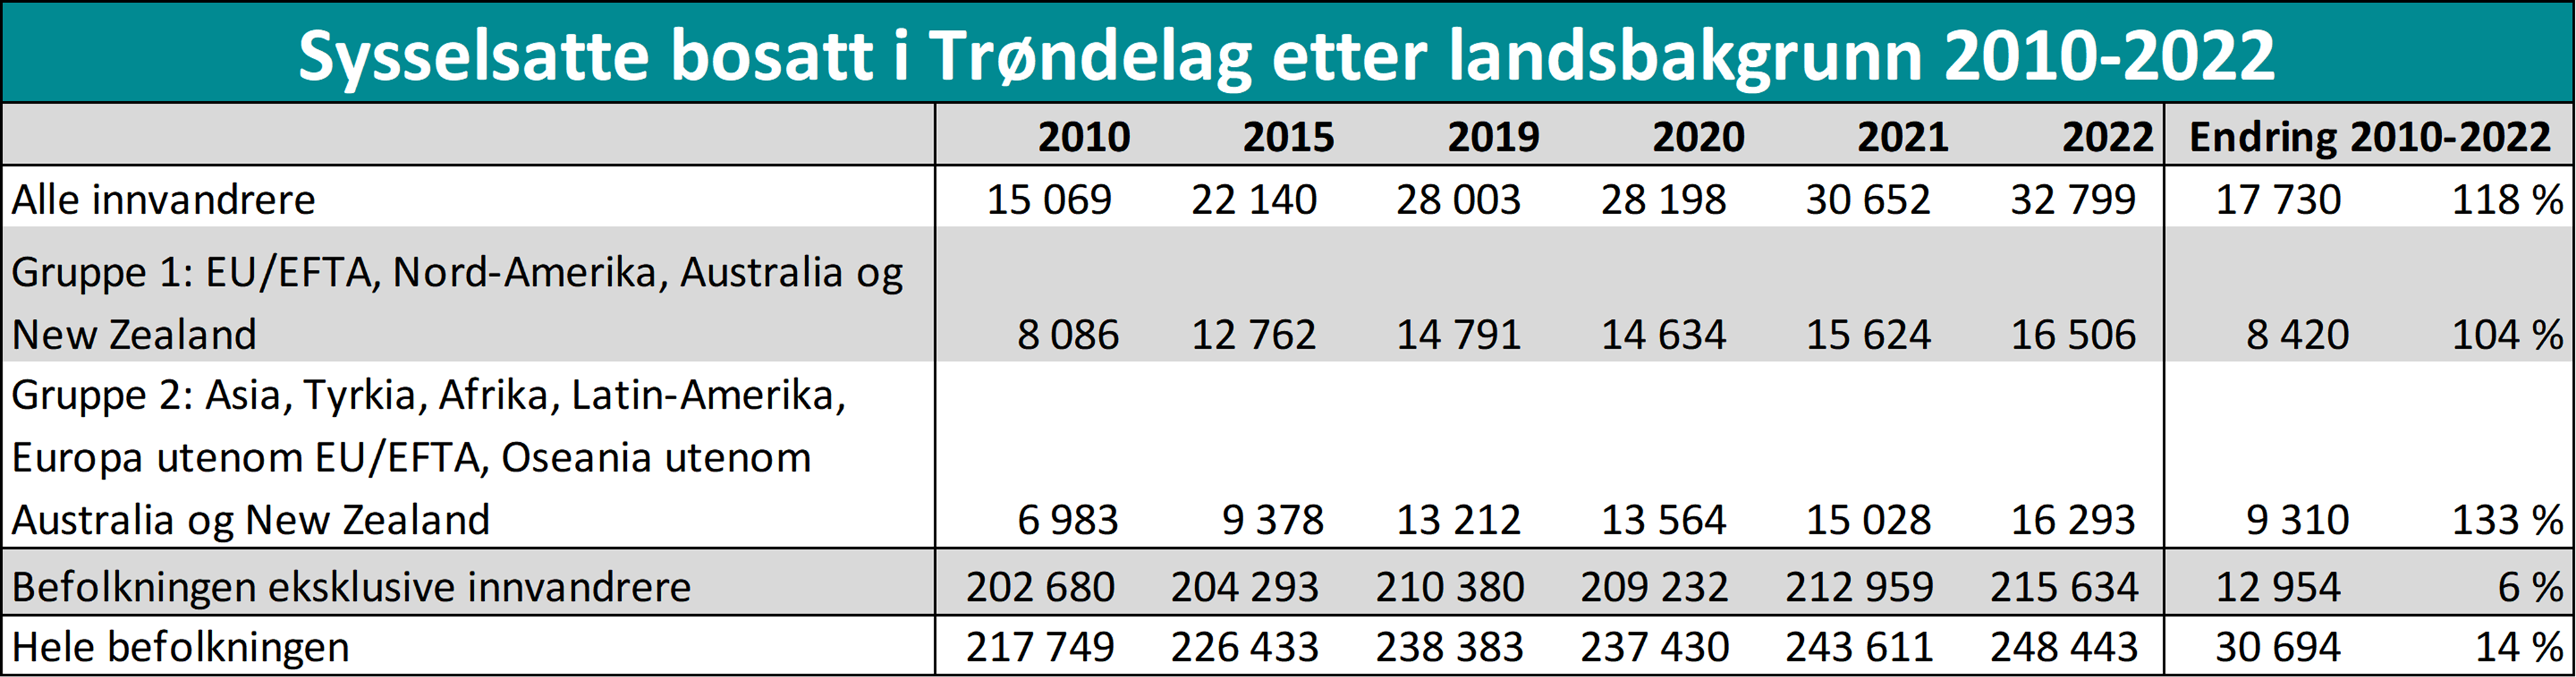 Sysselsatte bosatt i Trøndelag etter landsbakgrunn 2010-2022